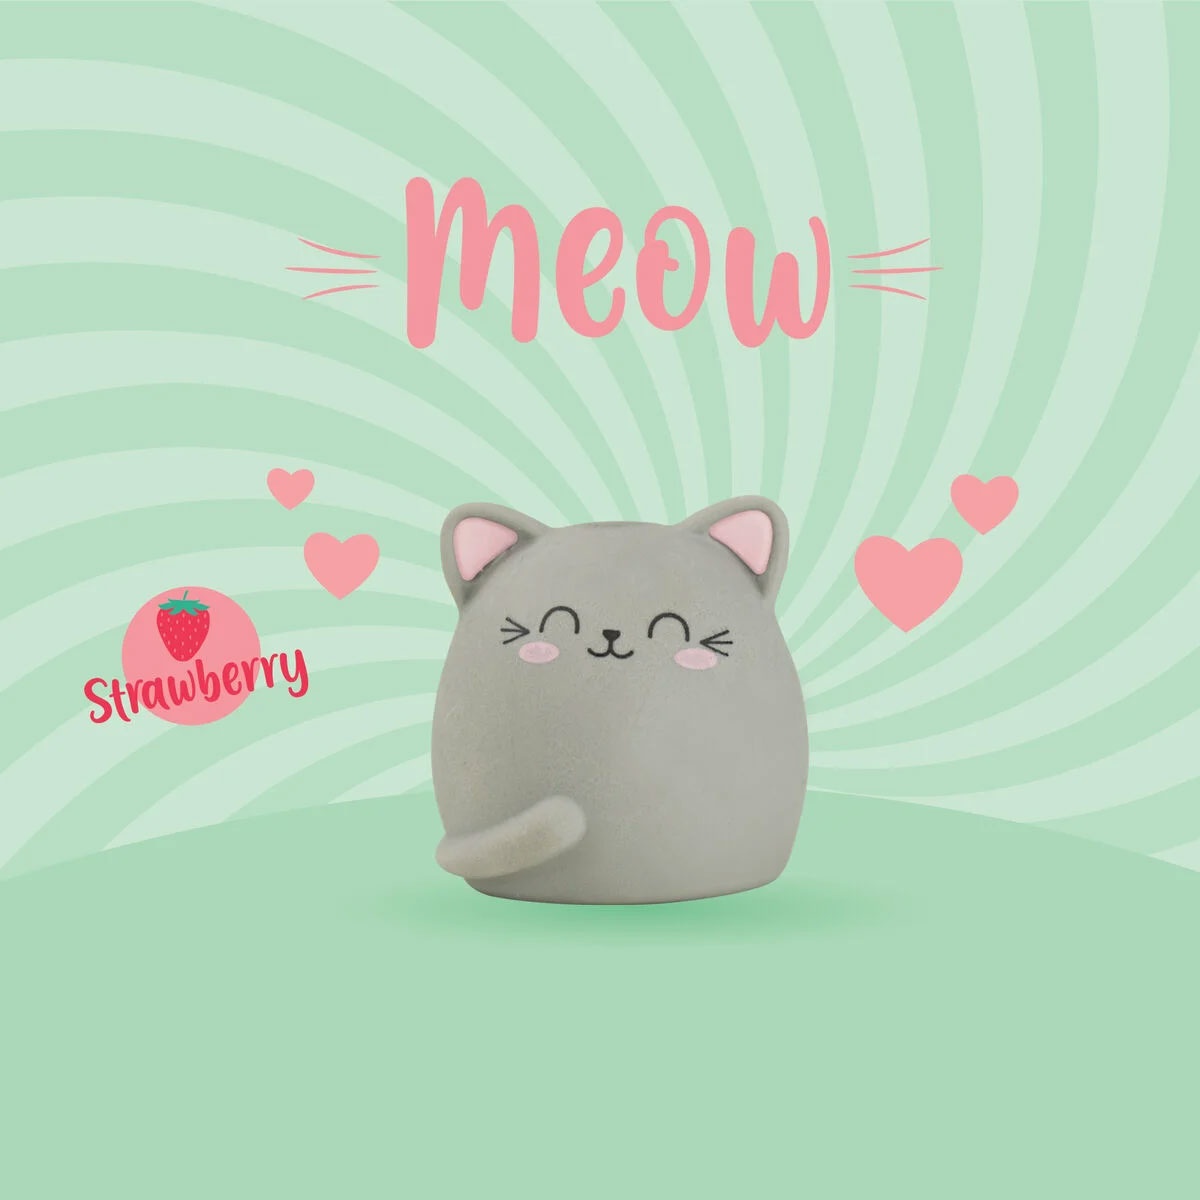 Radiergummi - Meow Katze mit Duft von Legami